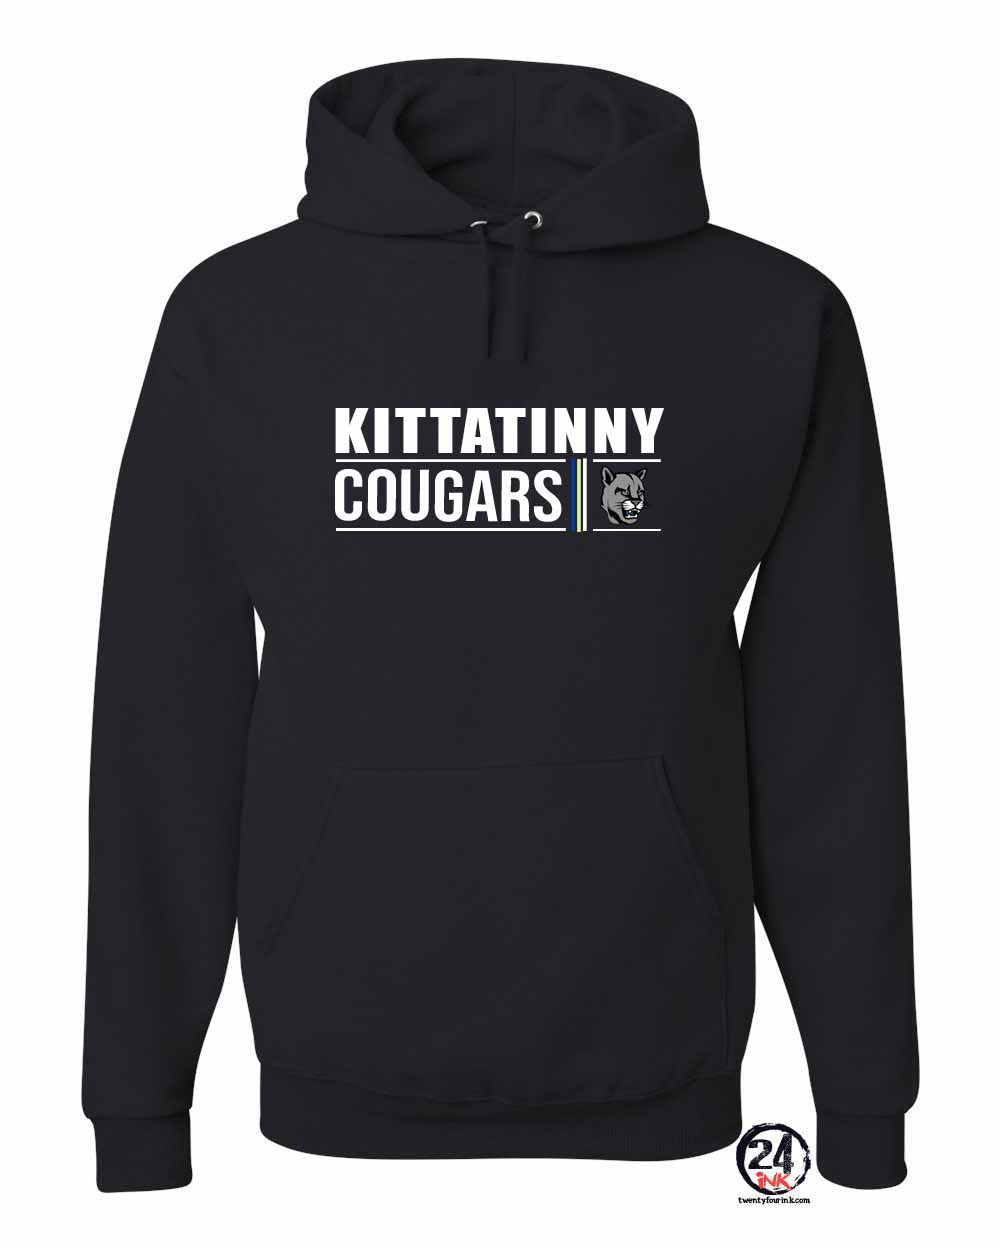 KRHS Design 7 Hooded Sweatshirt